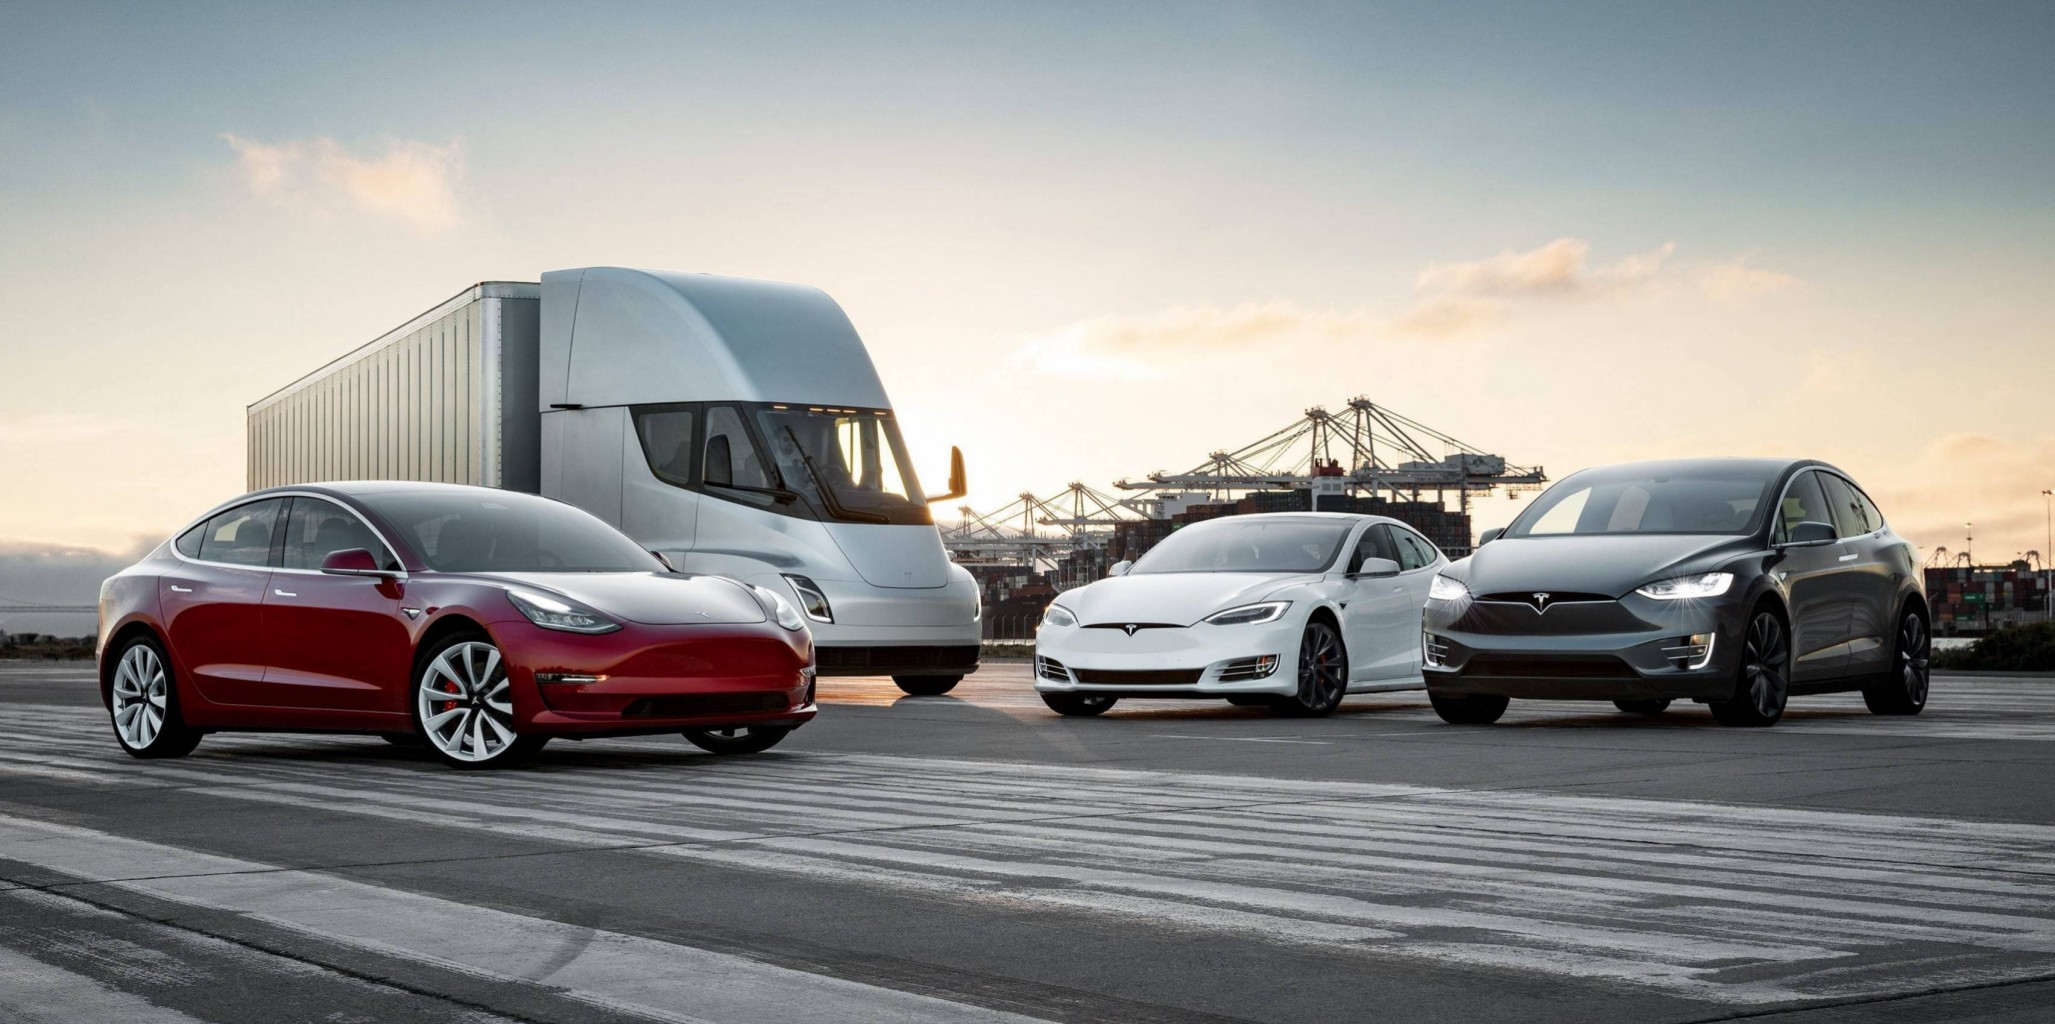 Tesla pudiera superar a Toyota como el fabricante de automóviles más valioso del mundo 